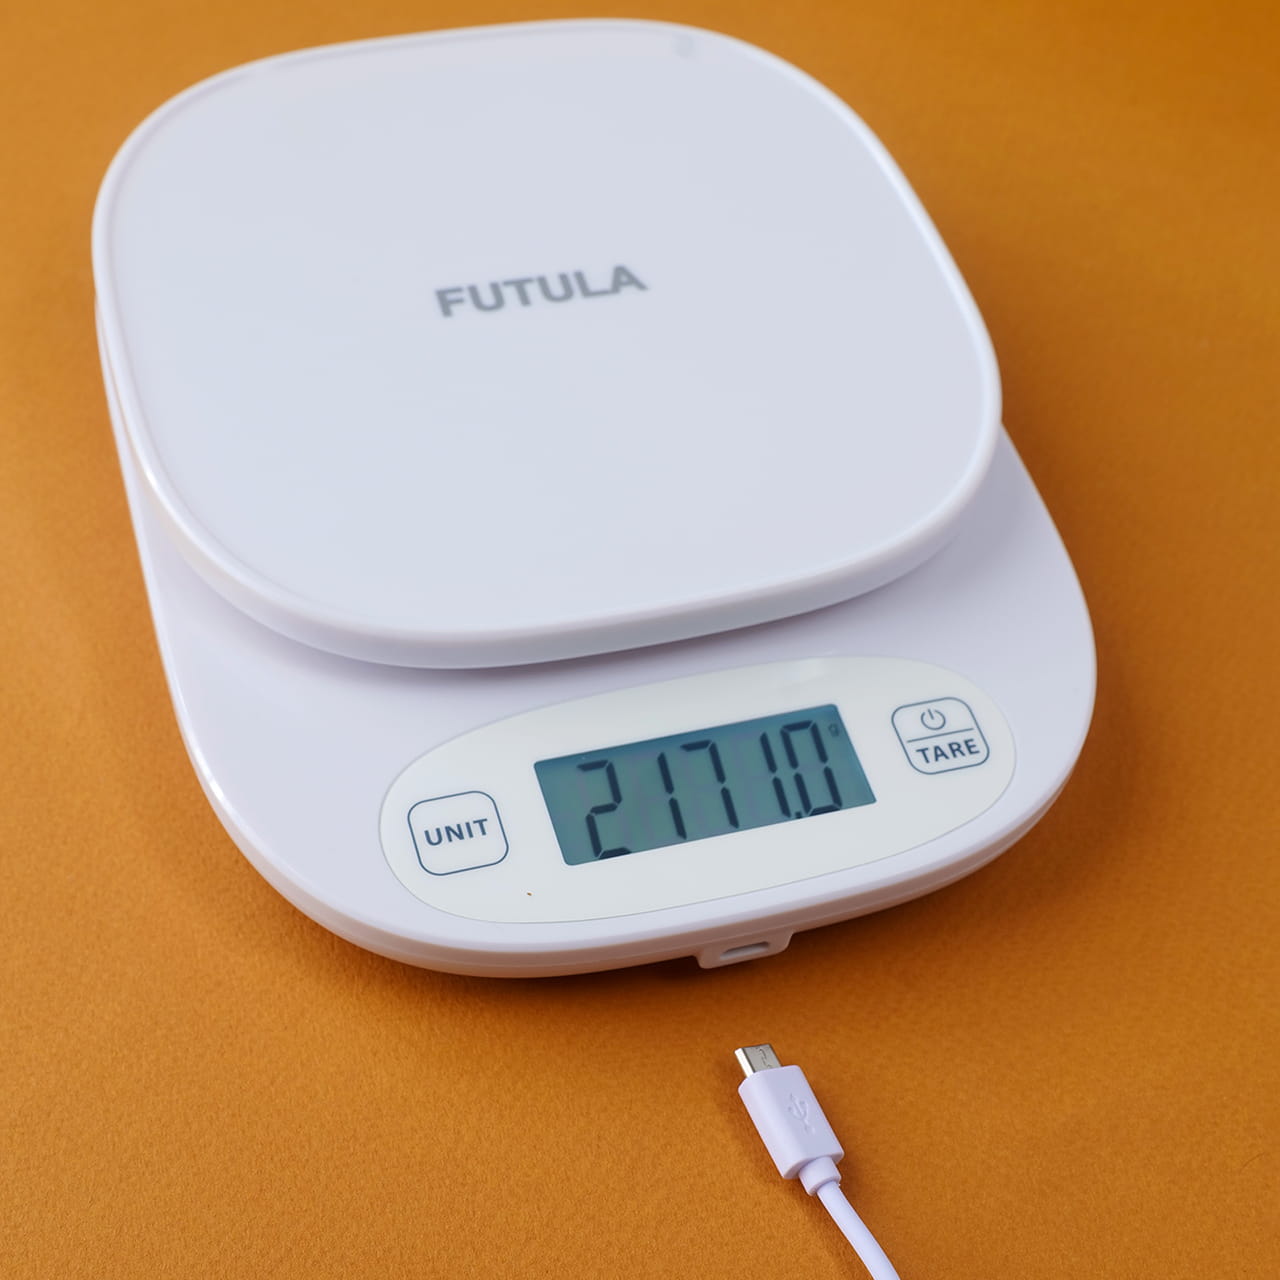 В отличие от младших моделей, Futula Kitchen Scale 4 оснащены встроенным аккумулятором на 800 mAh, который обеспечивает гаджету длительное время автономной работы. Зарядка батареи осуществляется через порт micro-USB